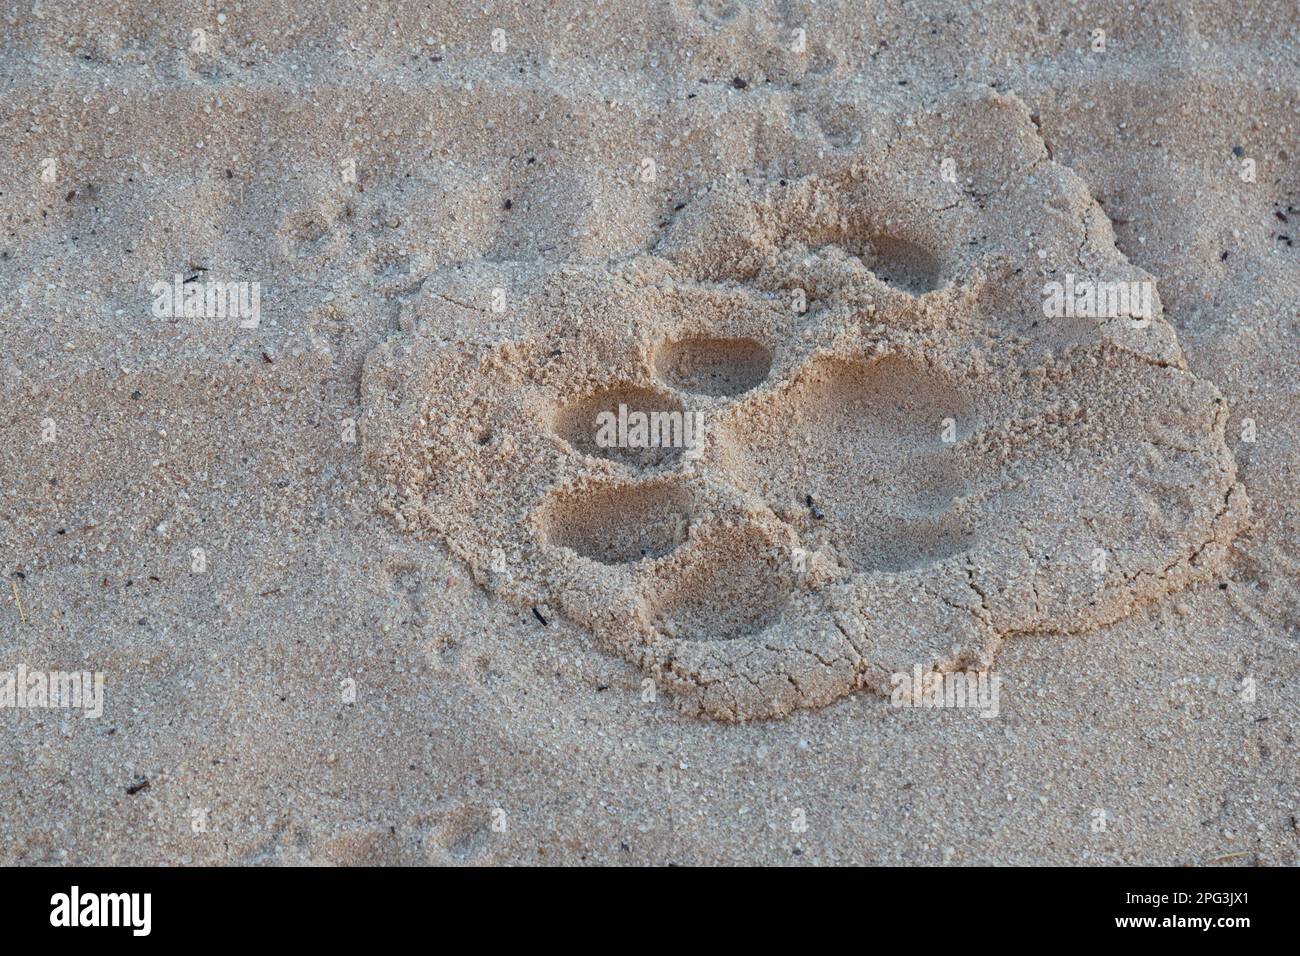 Nahaufnahme einer männlichen Löwenbahn in weichem Sand Stockfoto